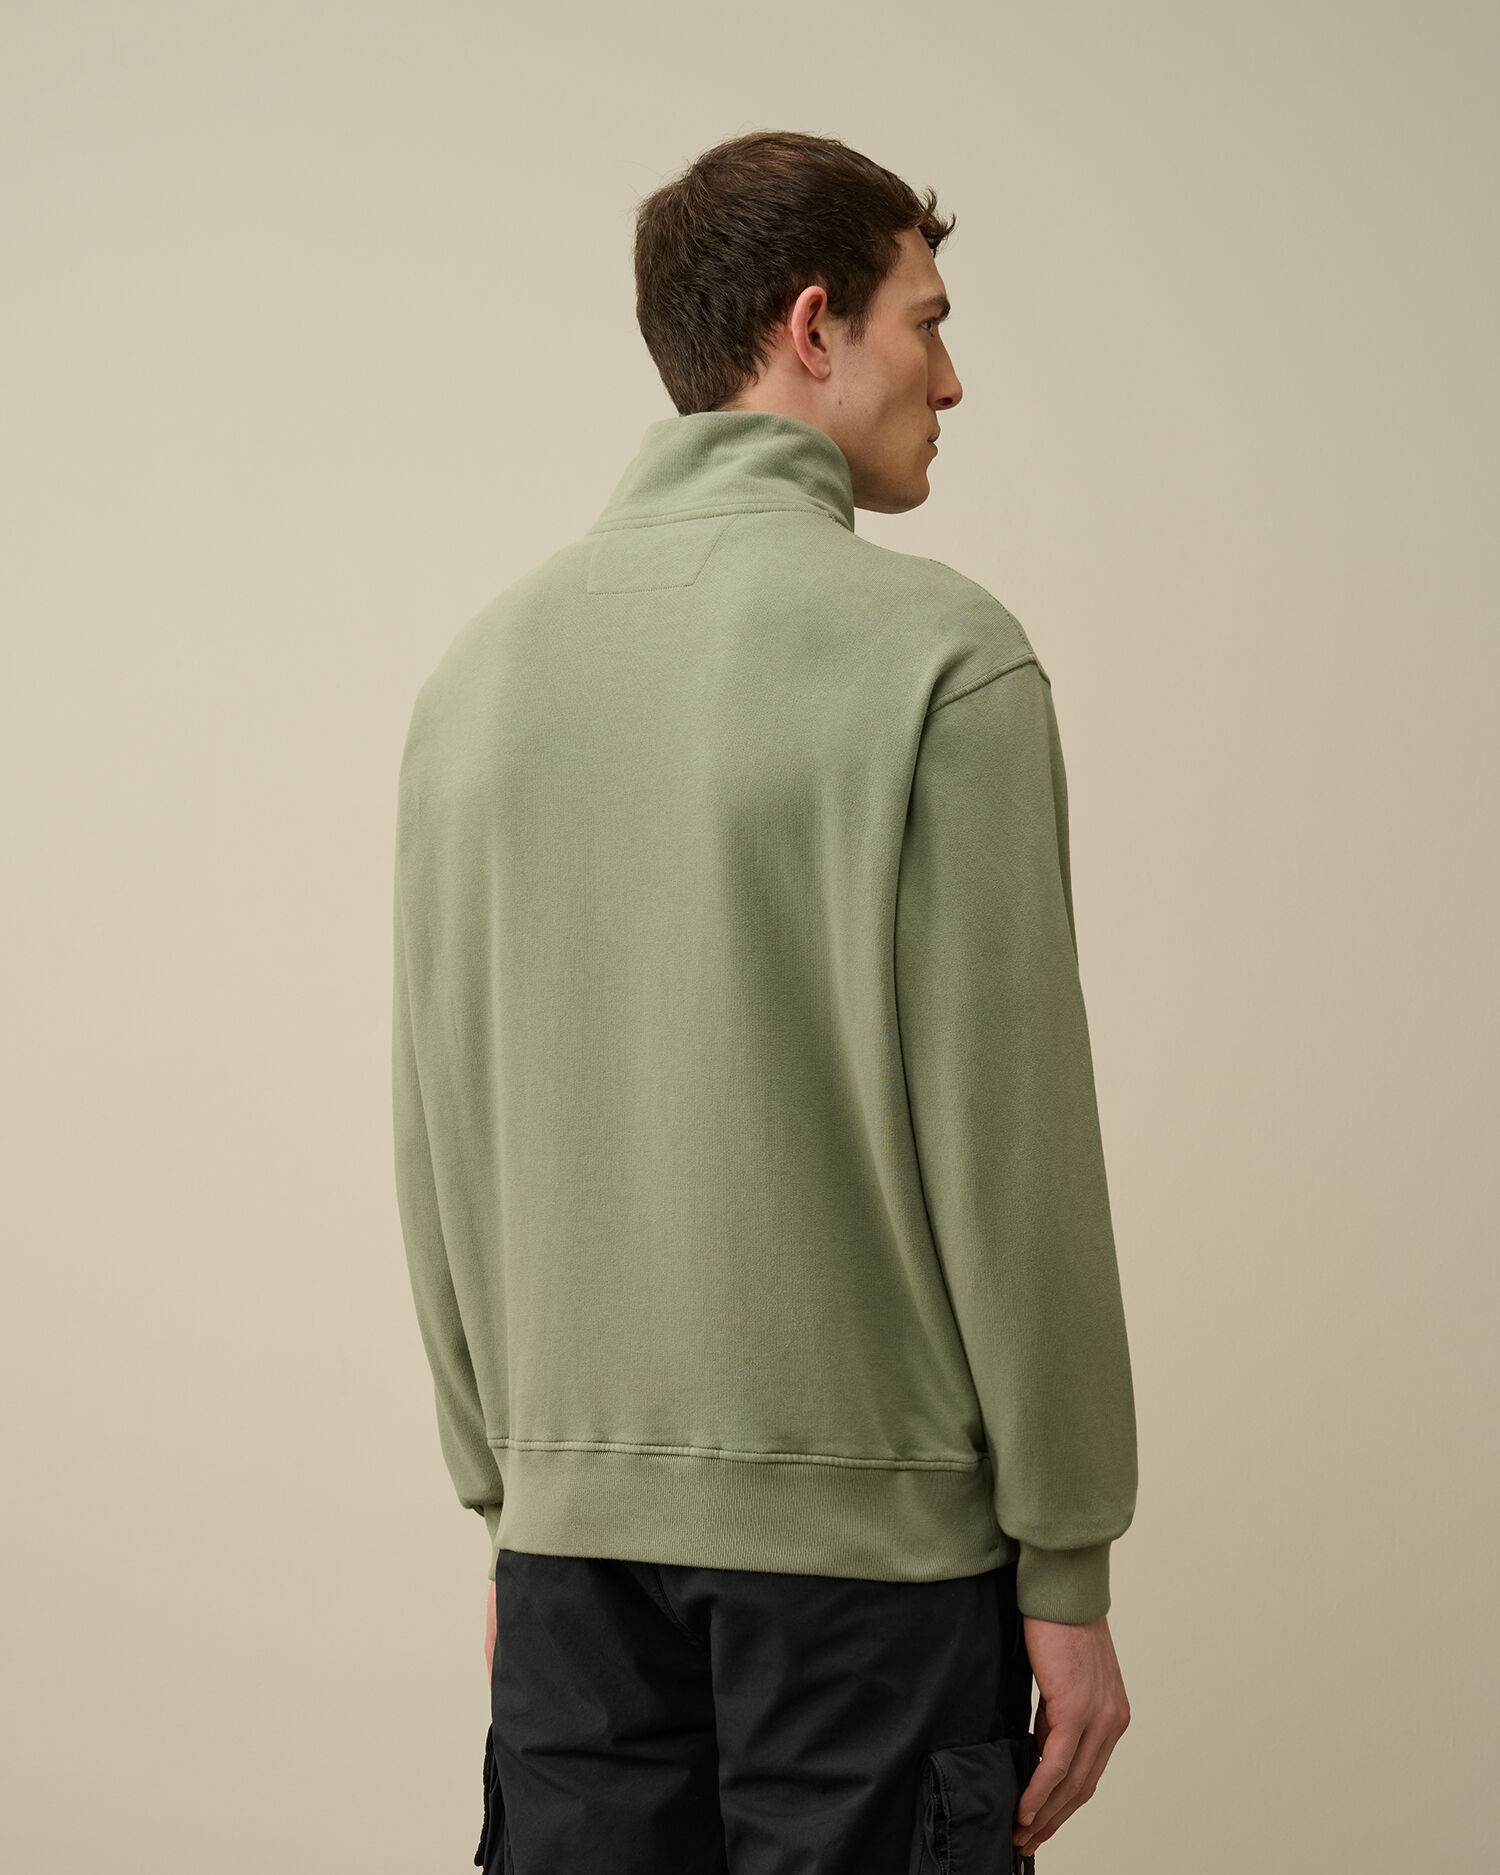 Cotton Fleece Mixed Zipped Sweatshirt - 3